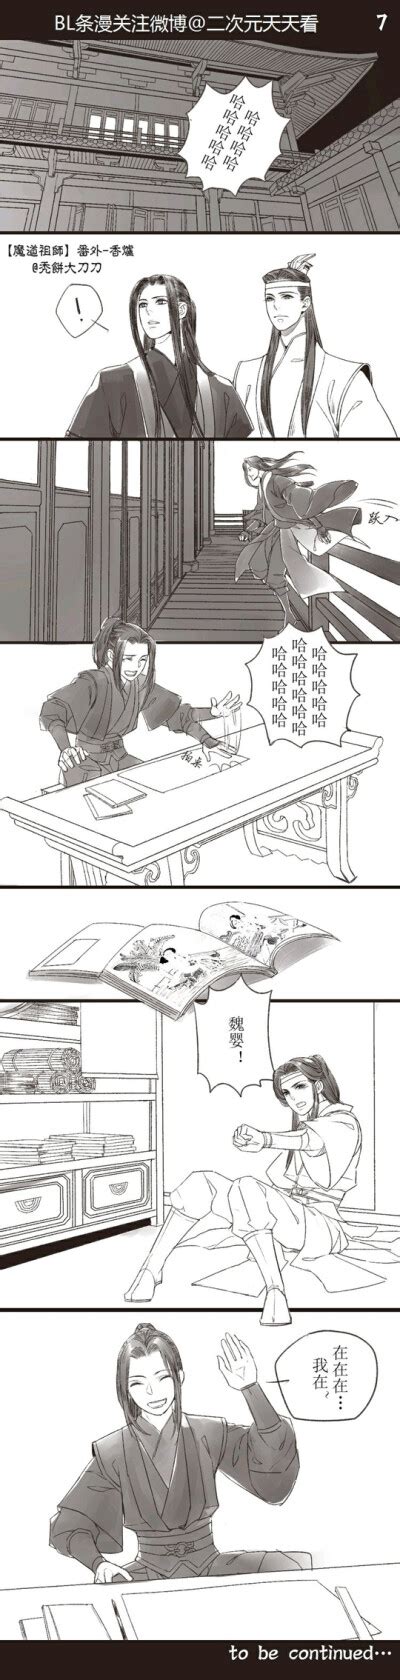 魔道祖师漫画香炉篇 - 高清图片，堆糖，美图壁纸兴趣社区